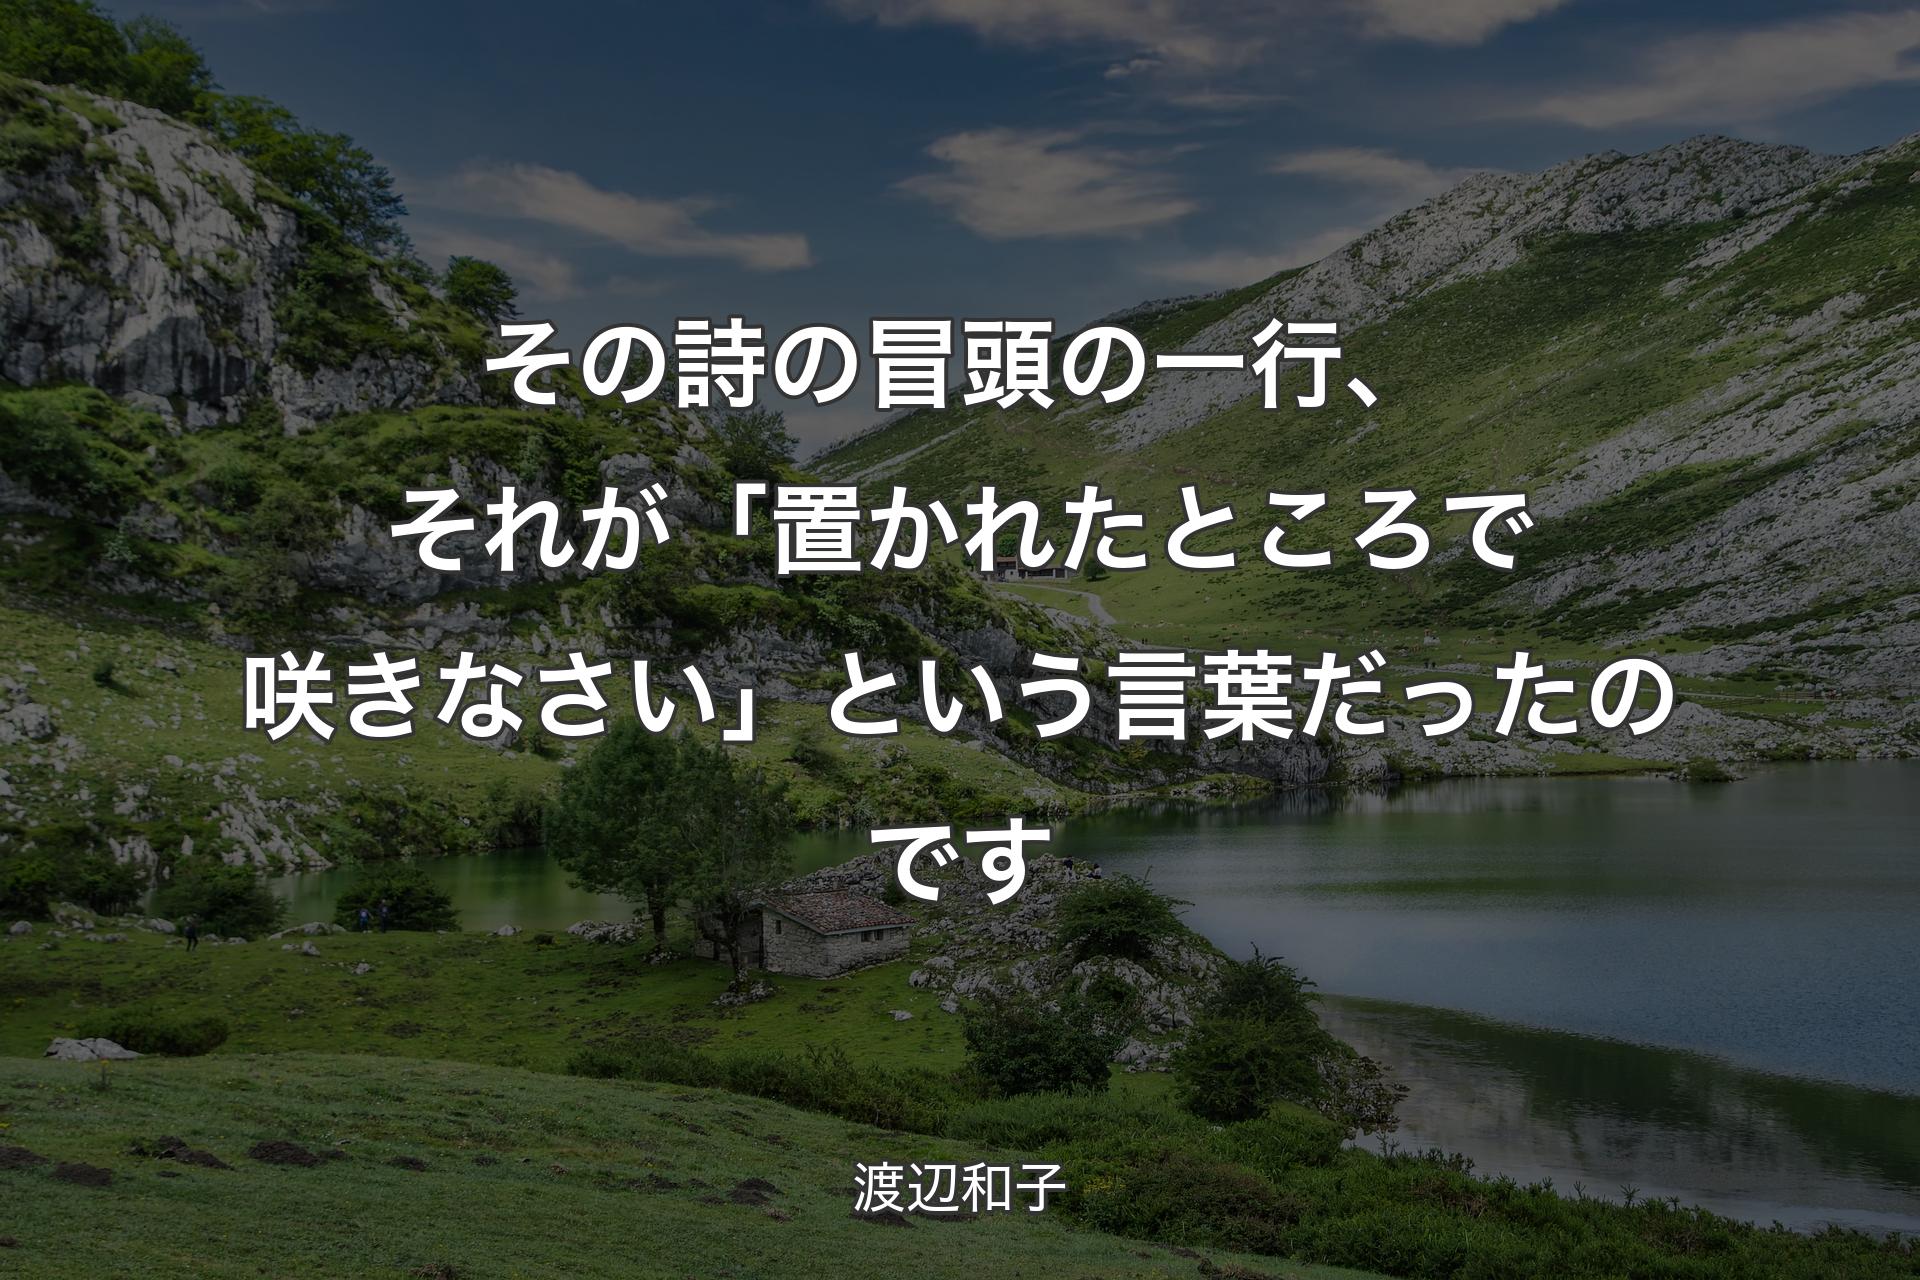 【背景1】その詩の冒頭の一行、それが「置かれたところで咲きなさい」という言葉だったのです - 渡辺和子